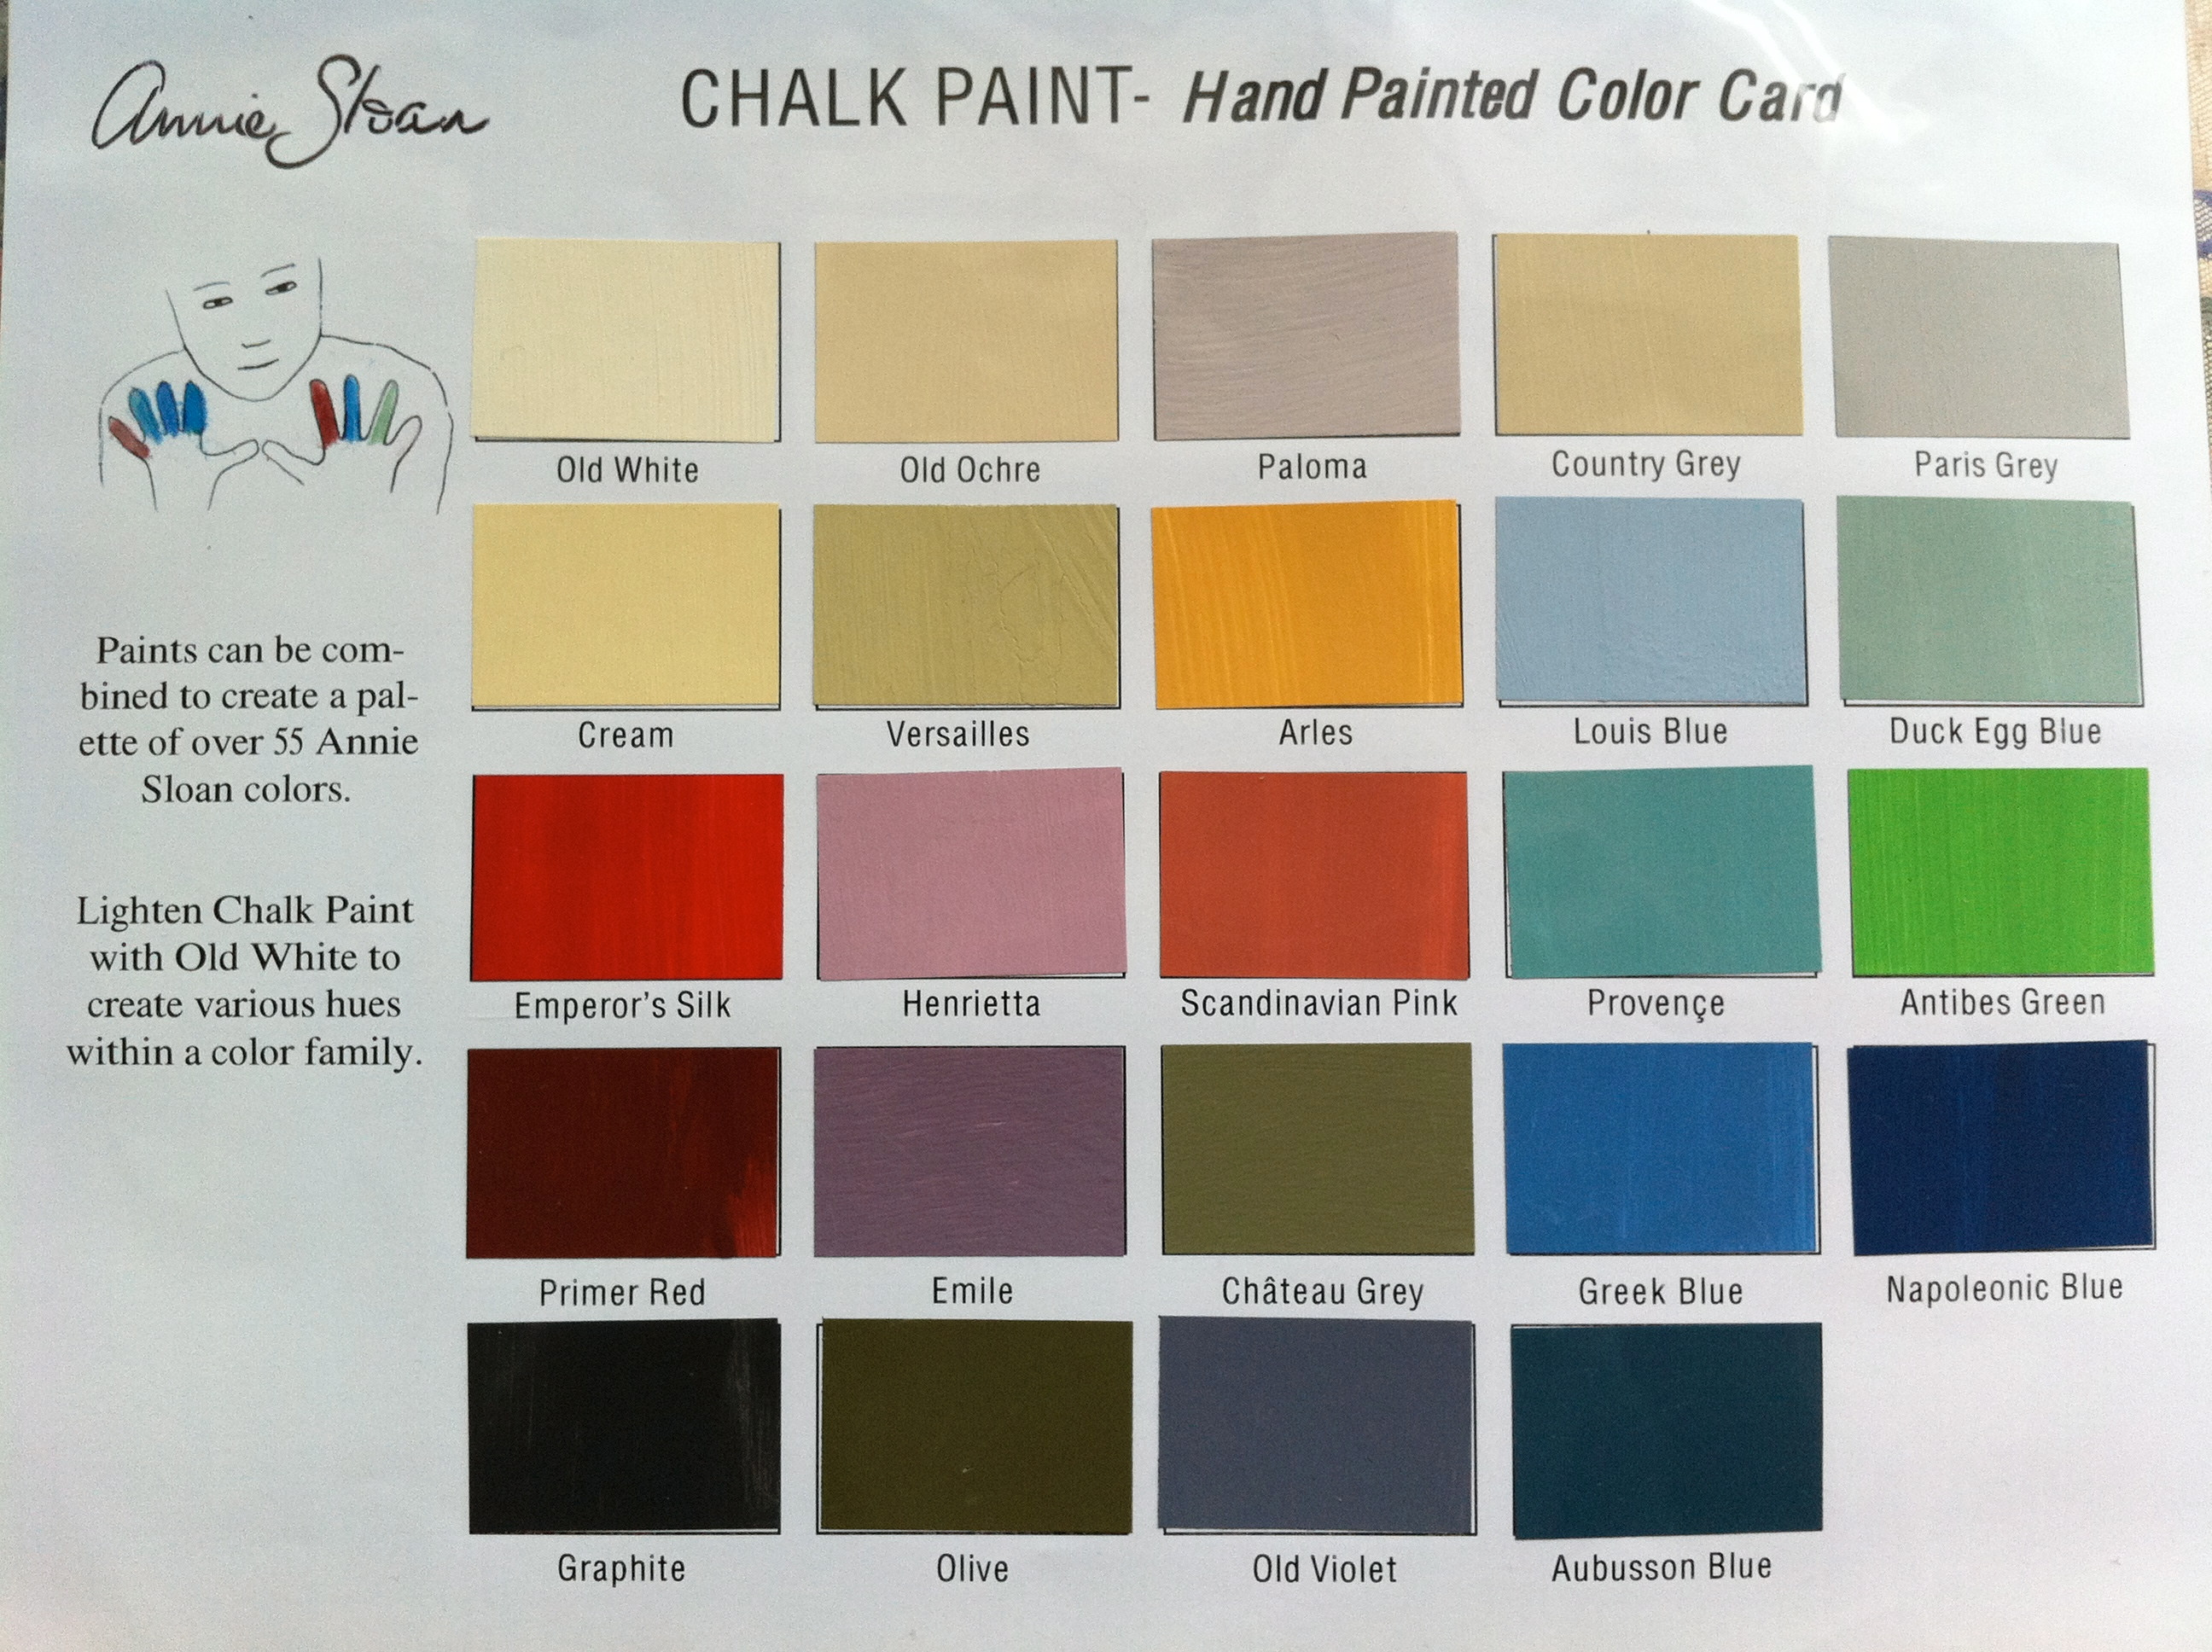 Best ideas about Chalk Paint Colors Lowes
. Save or Pin Chalk Paint Colors Lowes Now.